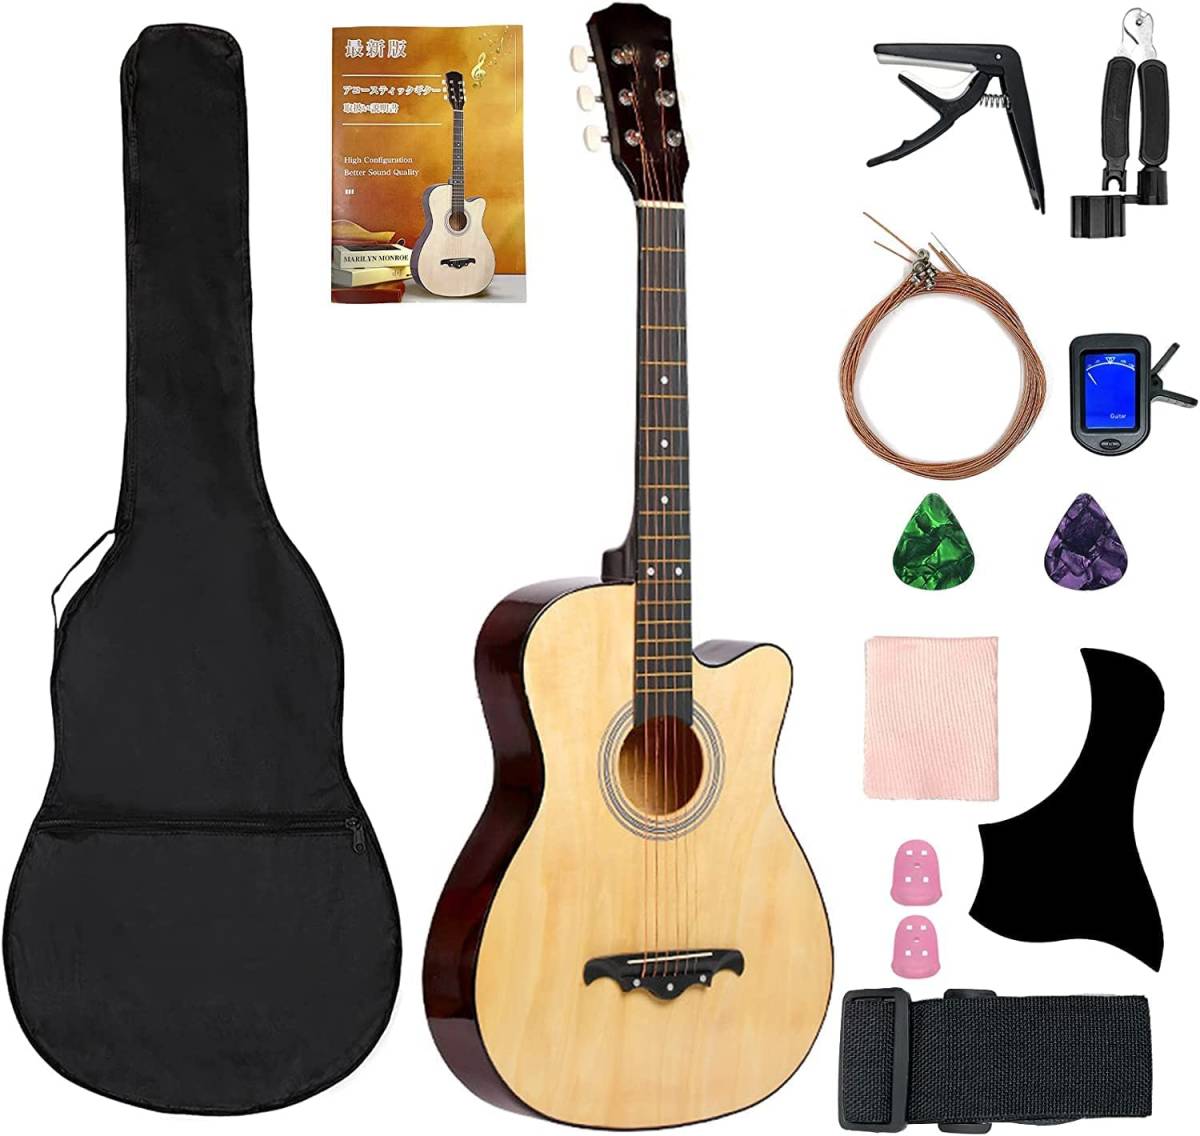 アコースティックギター、クラシックギター(楽器、手芸、コレクション 